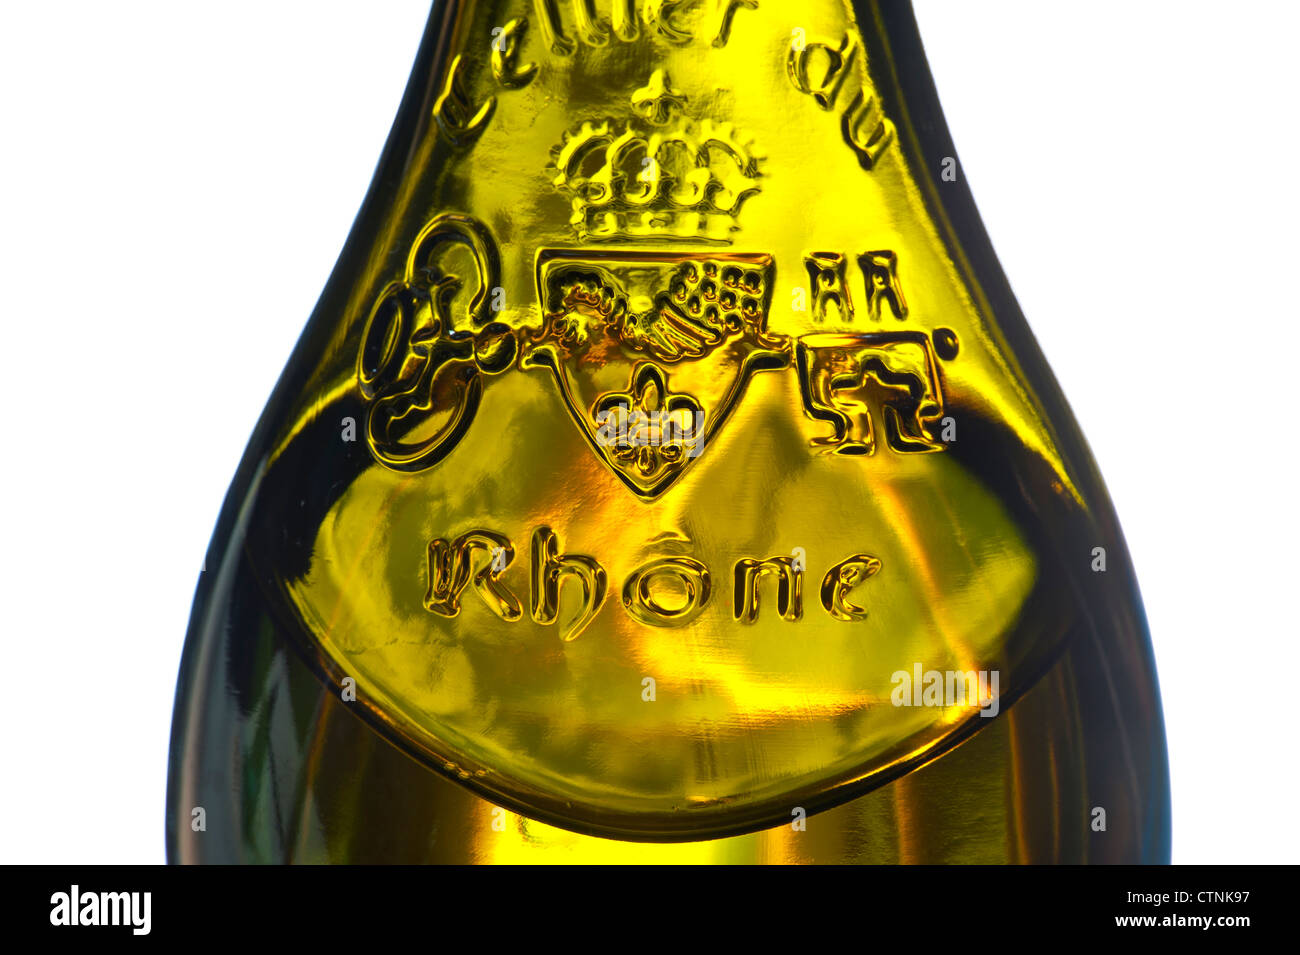 Rhone Weißwein Ansicht schließen auf dem Glasrelief-Etikett auf einer Flasche französischen weißen Rhone-Wein Cotes du Rhone Frankreich Stockfoto